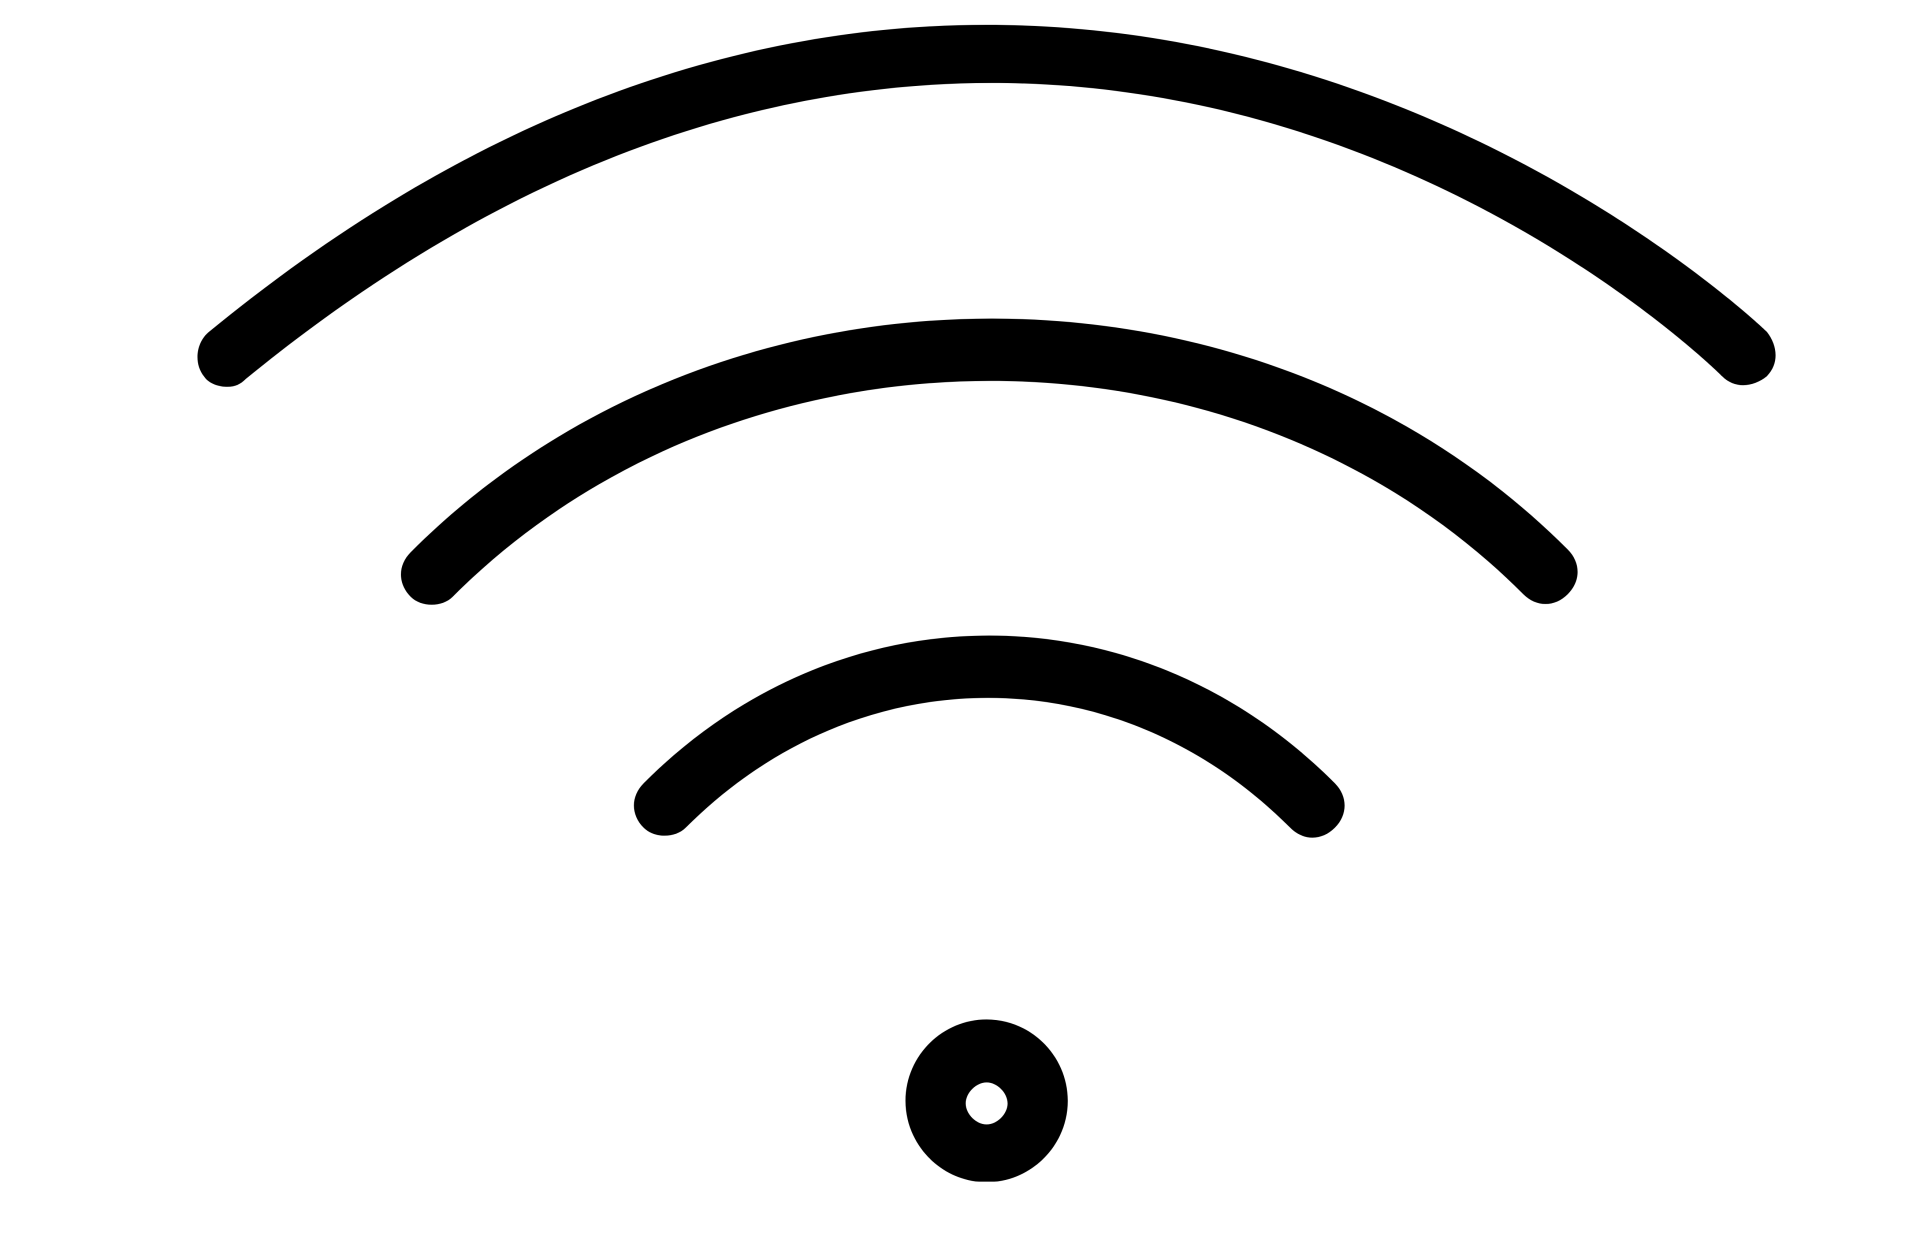 Wifi haut débit gratuit